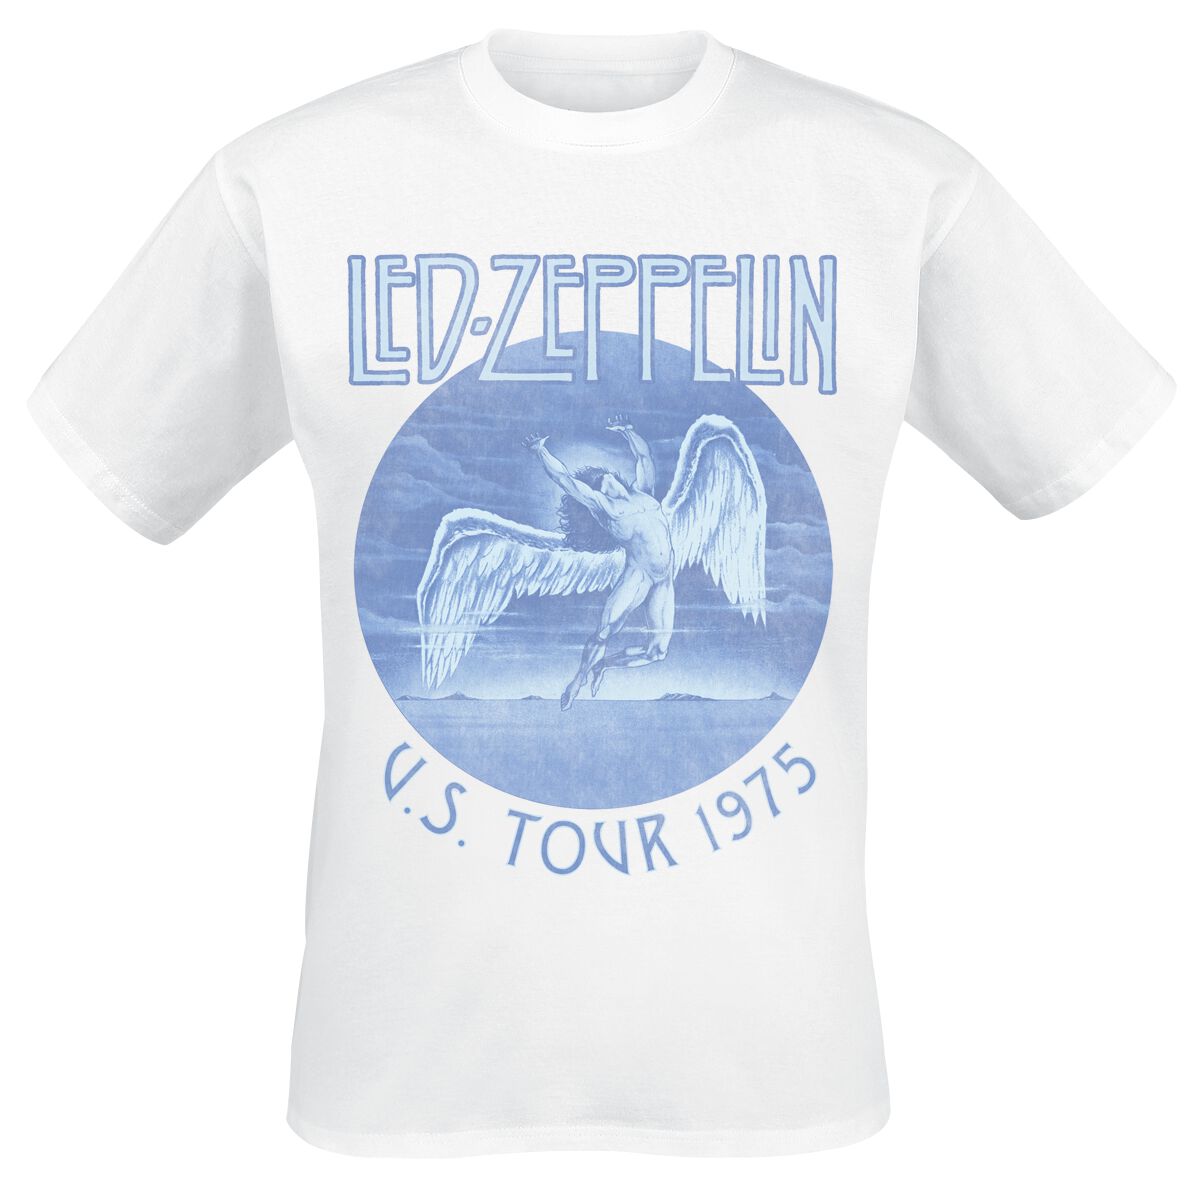 Led Zeppelin T-Shirt - Tour 75 - S bis XXL - für Männer - Größe M - weiß  - Lizenziertes Merchandise!